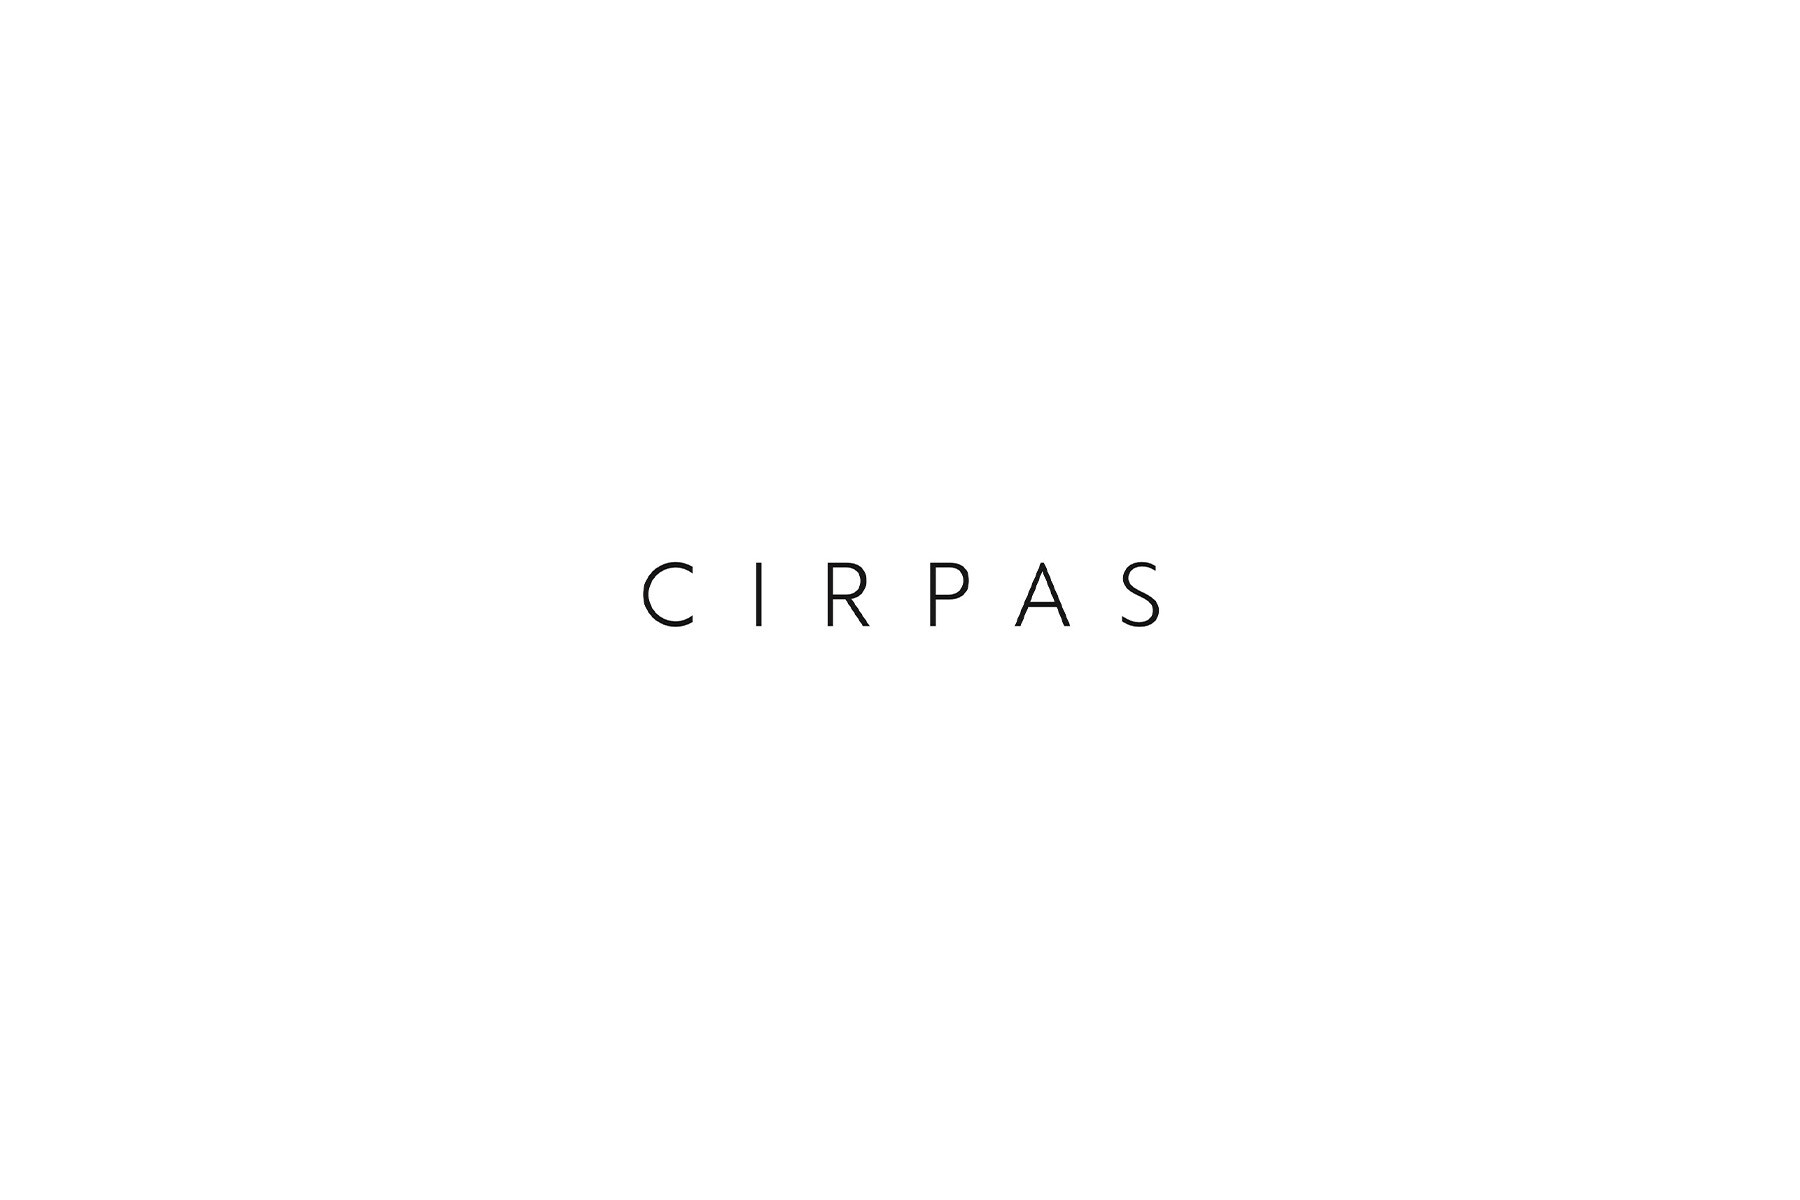 CIRPAS's images3